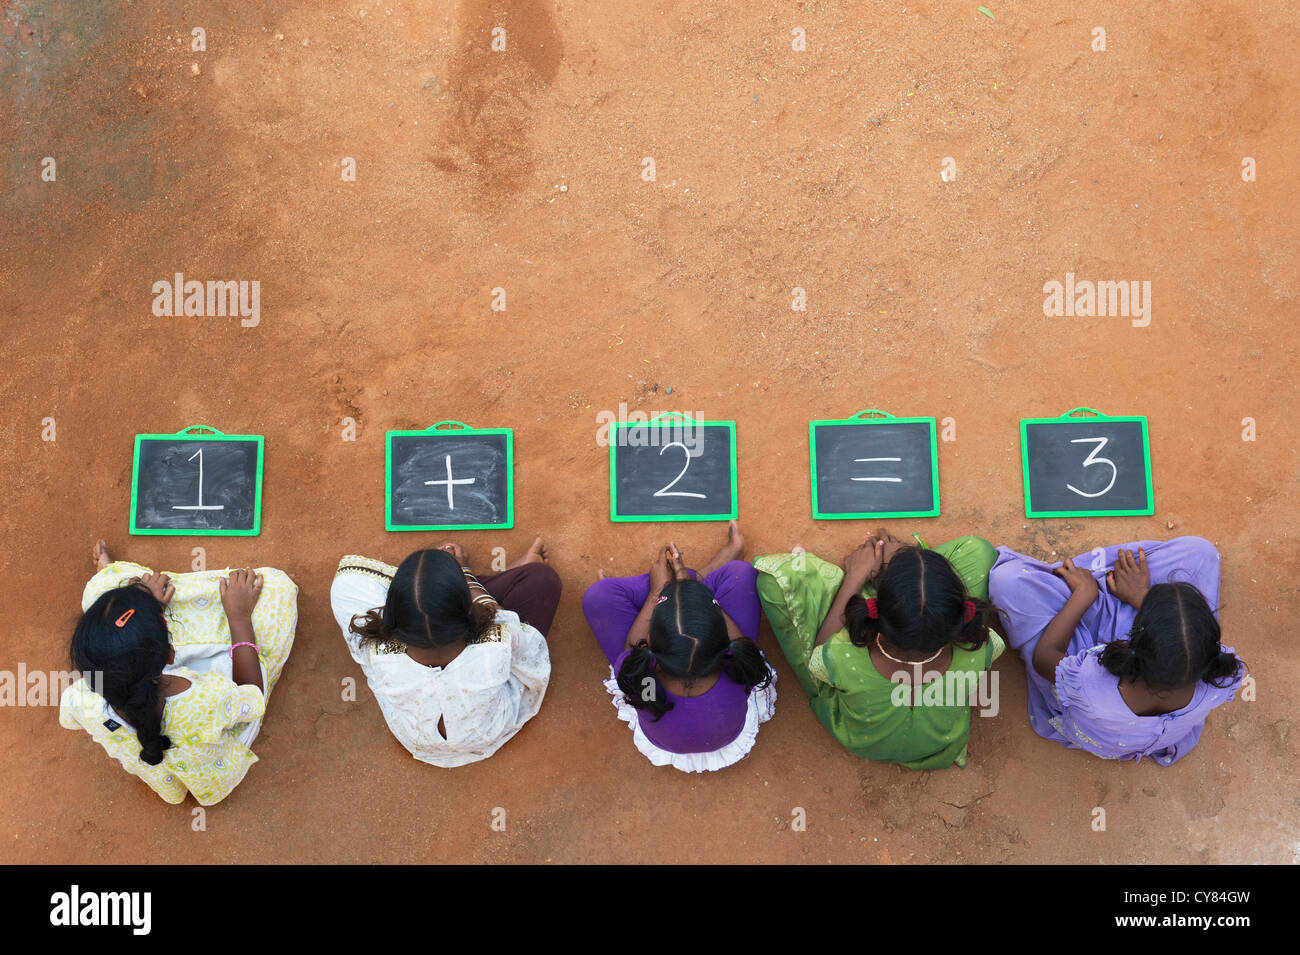 Fünf Mädchen, Indianerdorf mit 1 + 2 = 3 geschrieben auf einer Tafel in einem indischen Dorf. Andhra Pradesh, Indien. Kopieren Sie Raum. Stockfoto